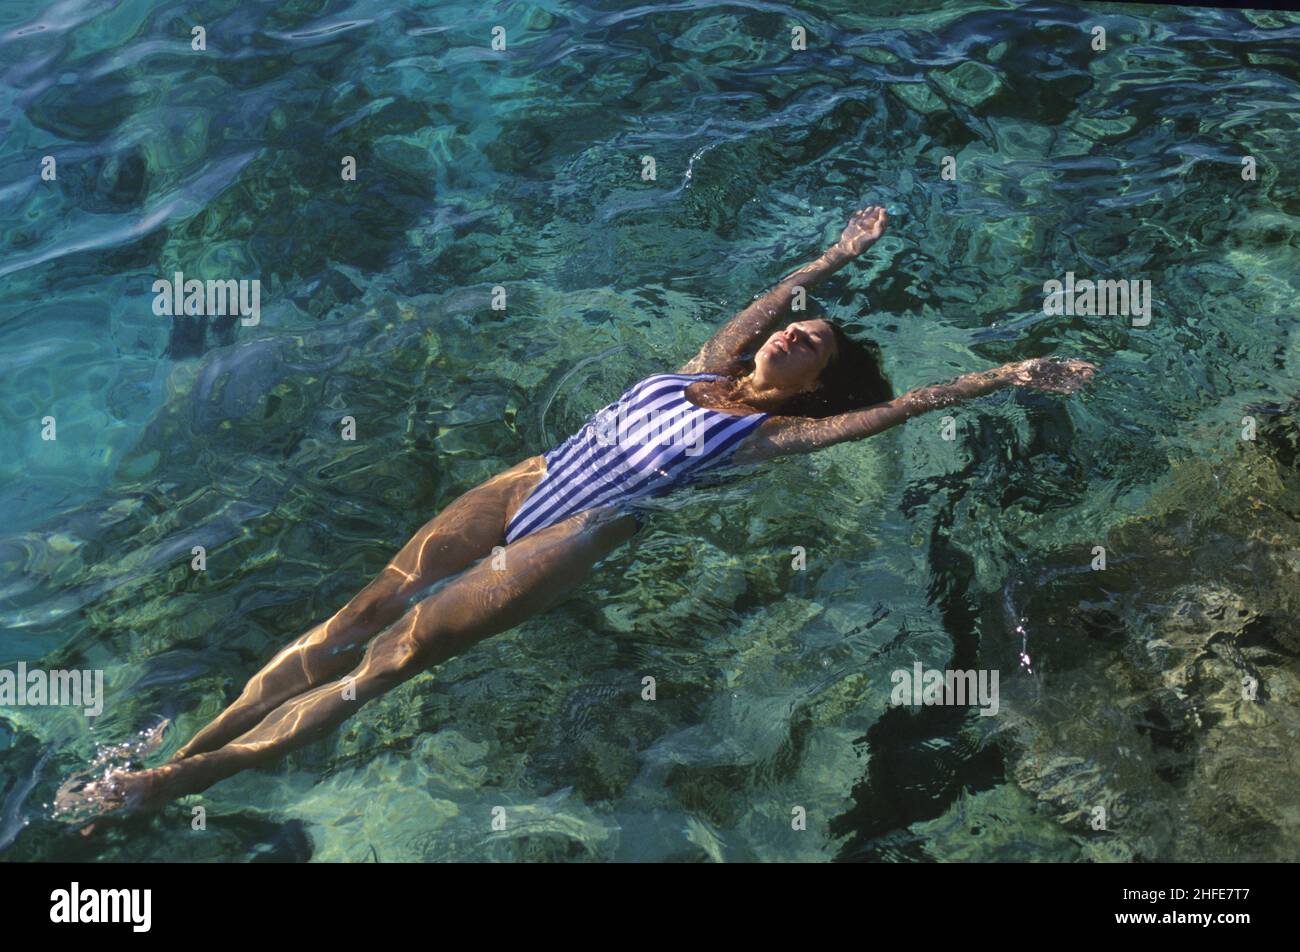 capelli scuri giovane donna sirena swimming indietro rilassante corpo galleggiante acqua di mare luce naturale Foto Stock